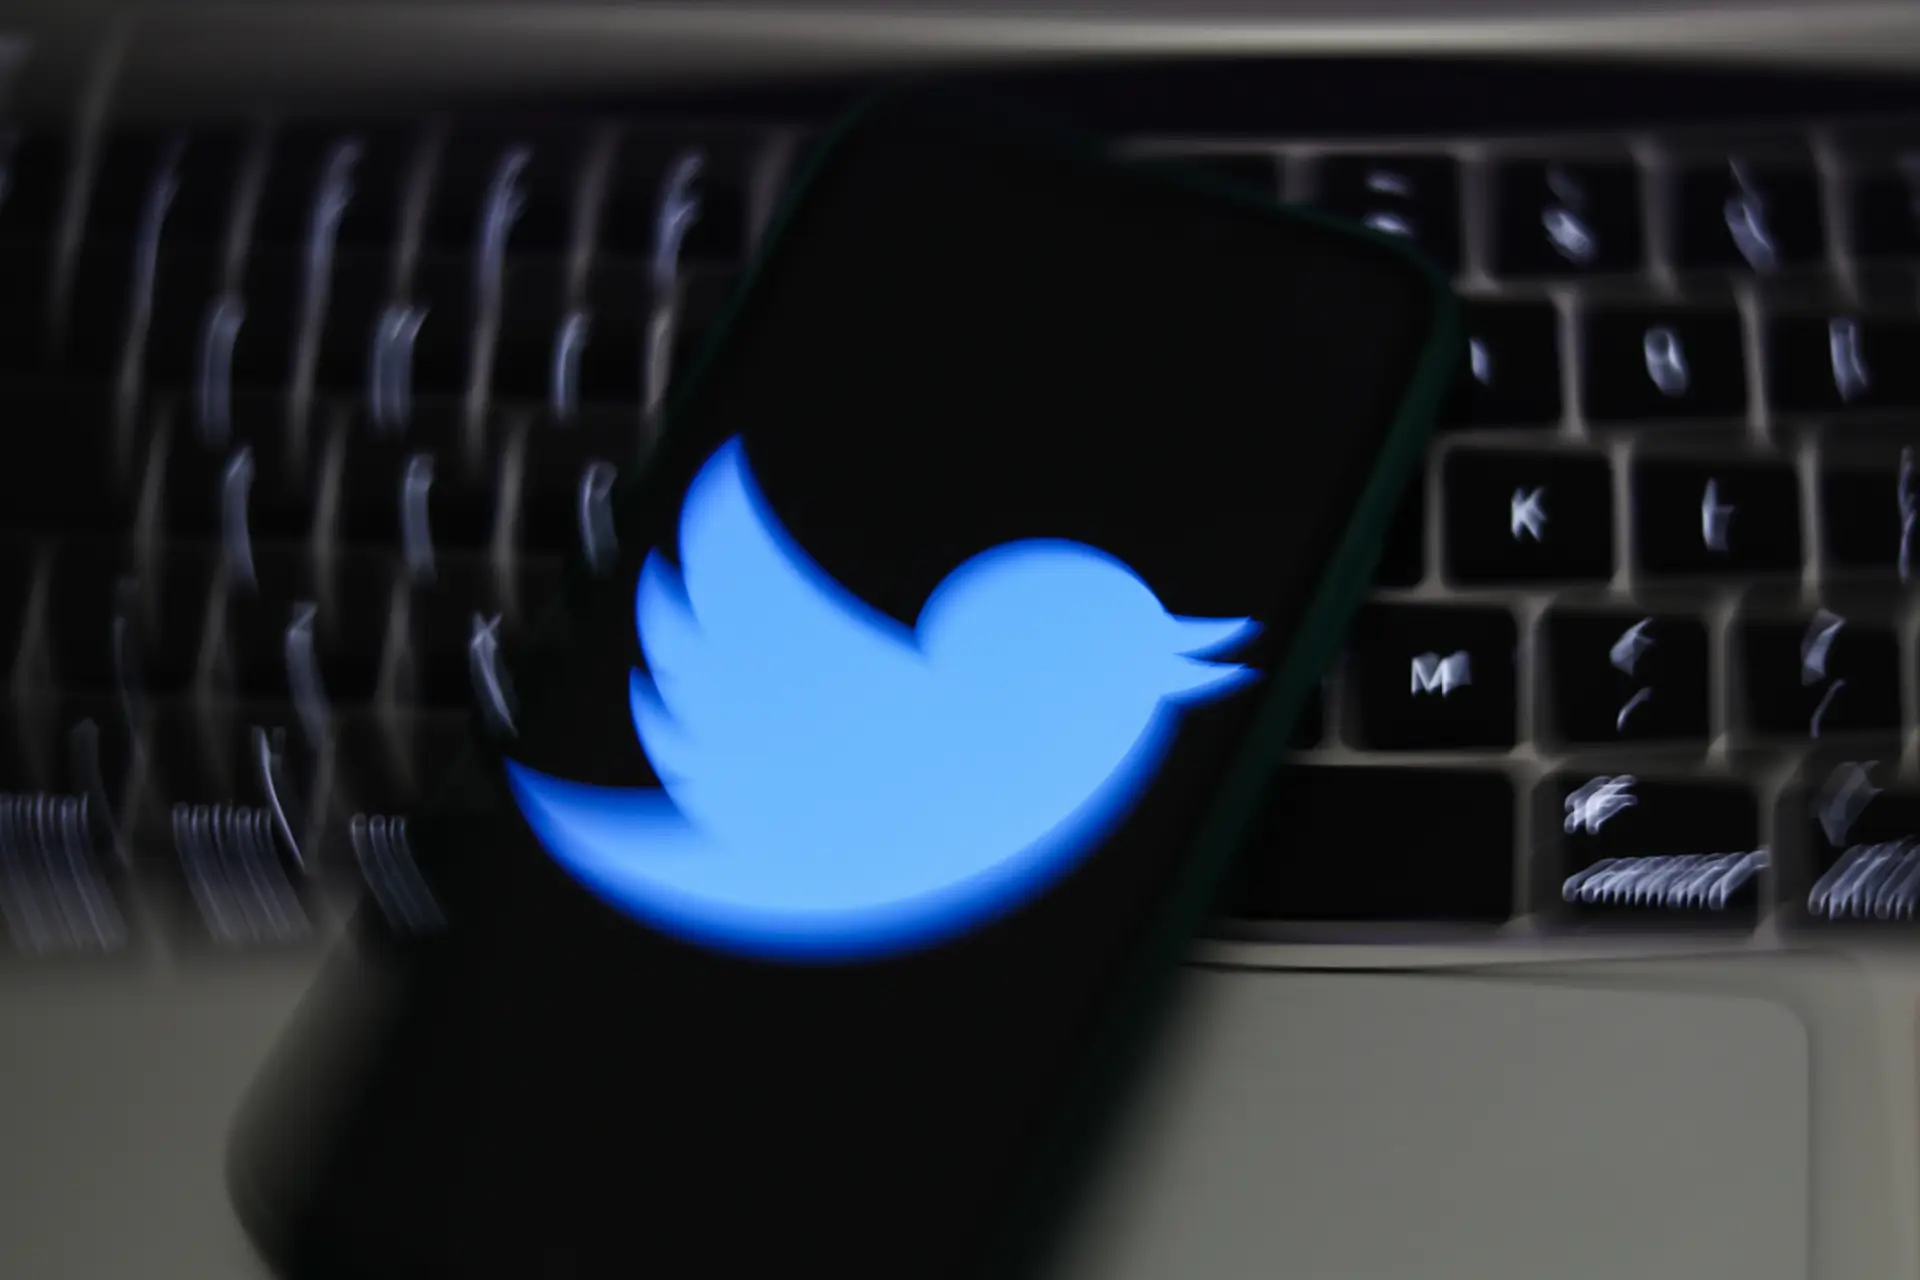 Problemas técnicos no Twitter causaram dificuldades de acesso a milhares de utilizadores